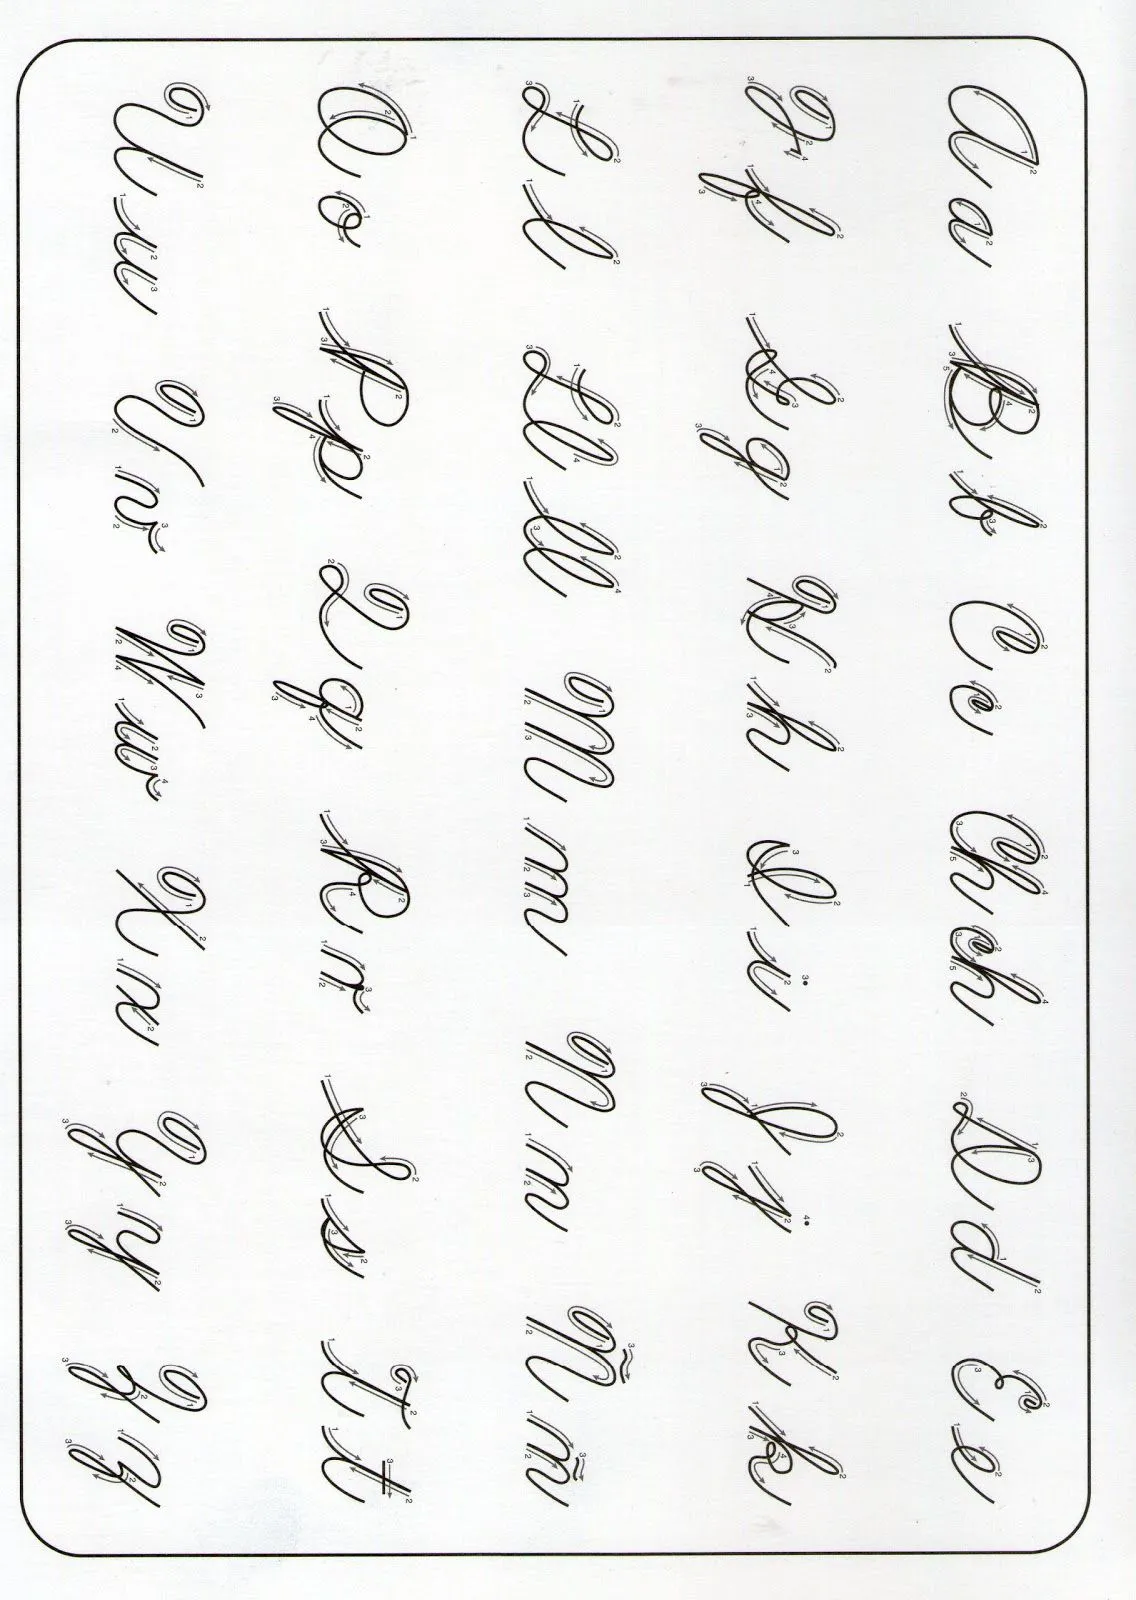 Plantillas de letras cursivas para imprimir - Imagui